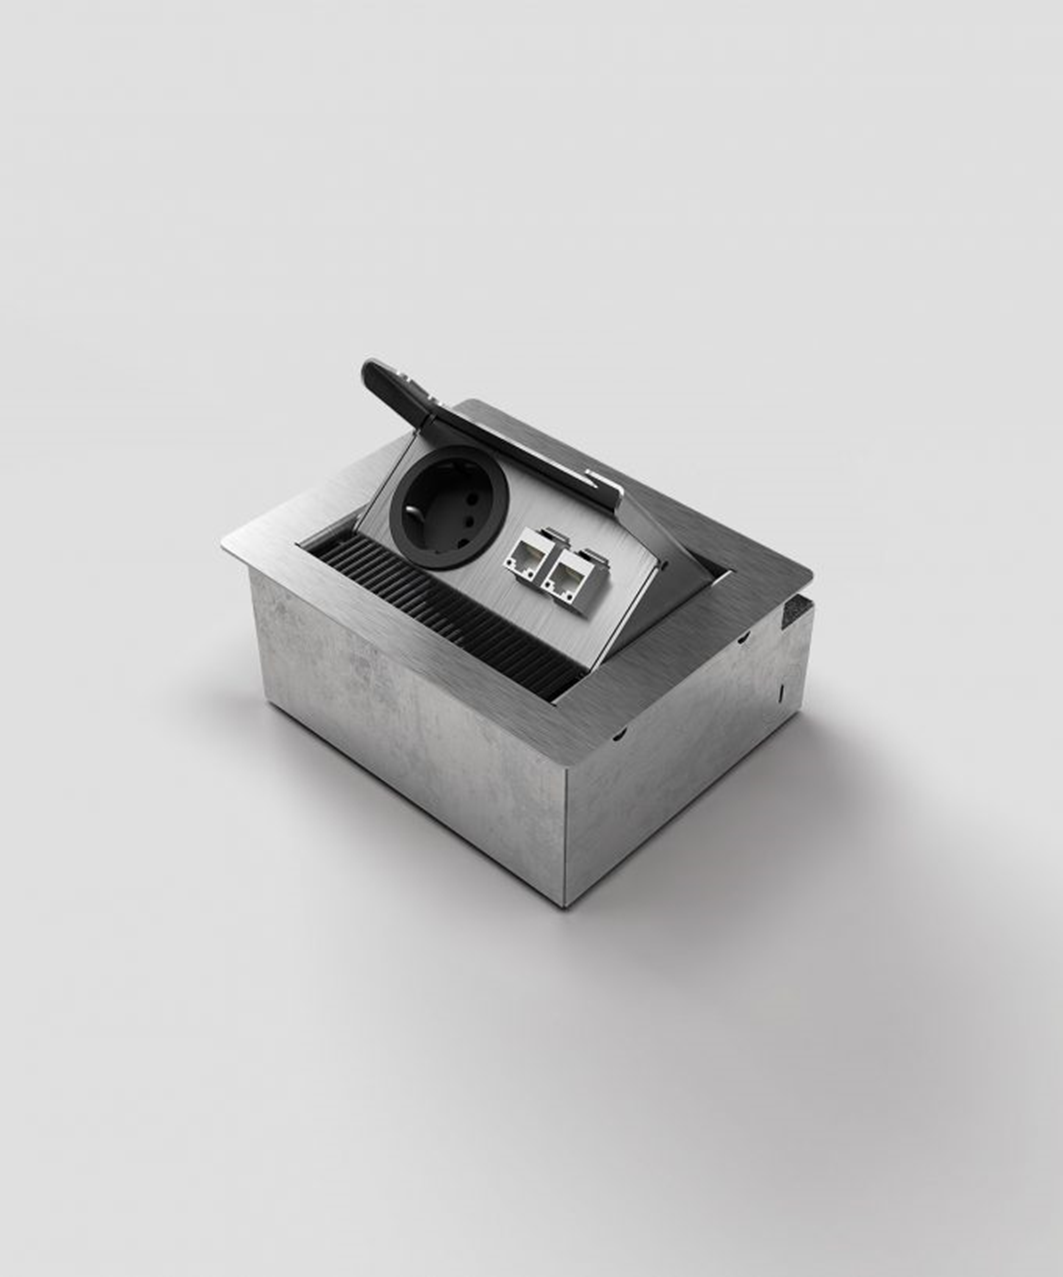 BS 3202E1 Anschlussmodul für Tisch- oder Bodenbereich, 2-fach, eckig, Klappdeckel aus Edelstahl, 1x Schutzkontakt-Steckdose, 1x RJ45 2-fach, inkl. Aufnahmebox